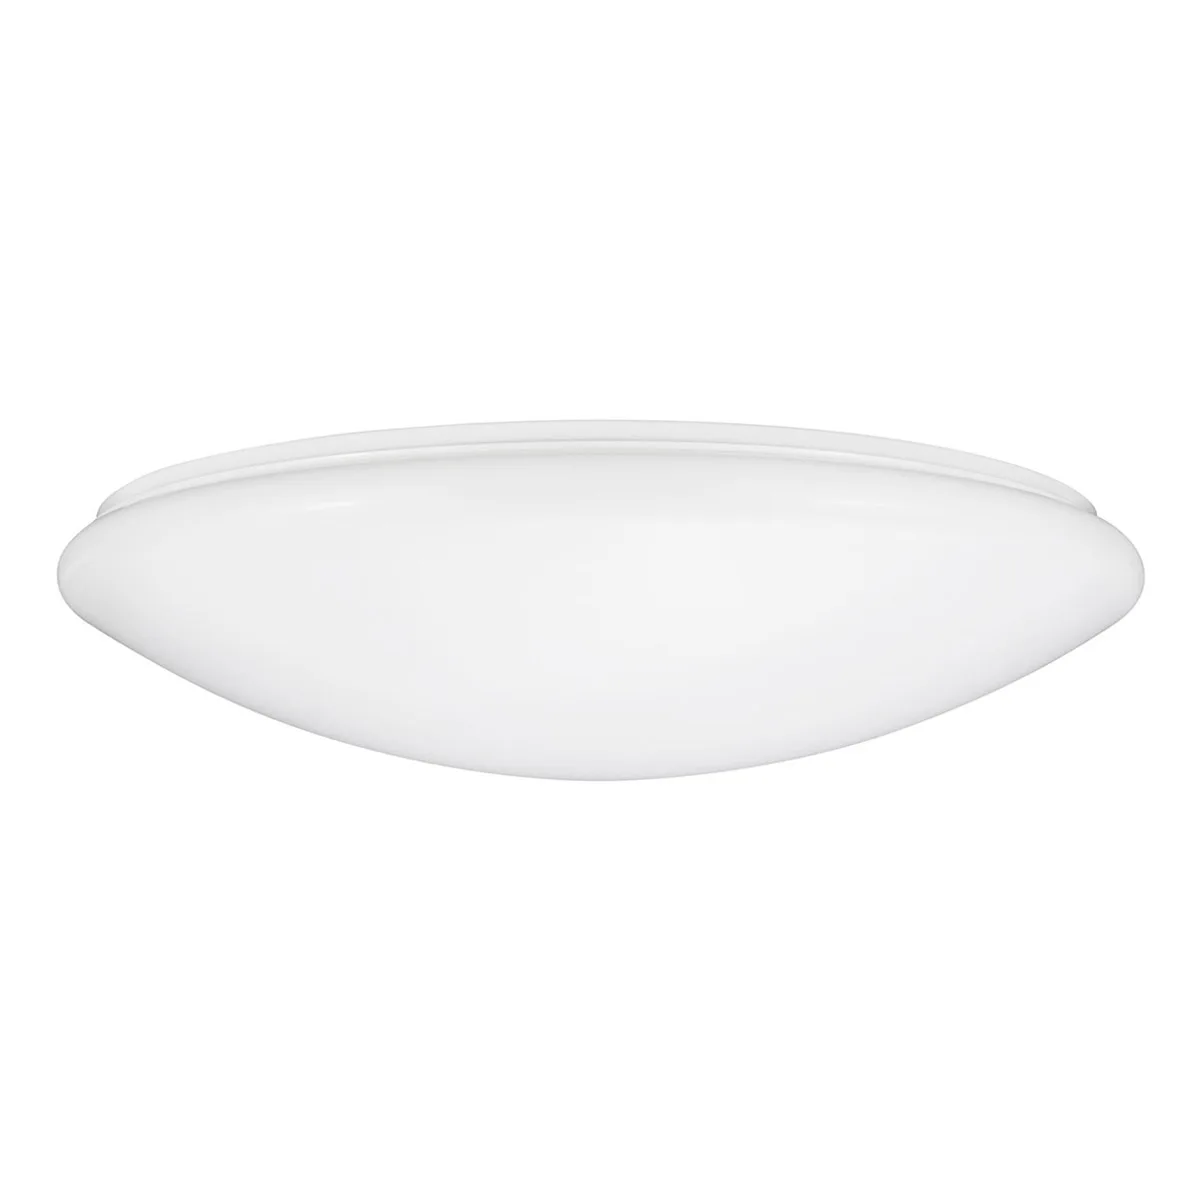 high quality Sunlite LED Mushroom Ceiling Light Fixture, 16 Watt, Dimmable, 1160 Lumen, 50K - Super White